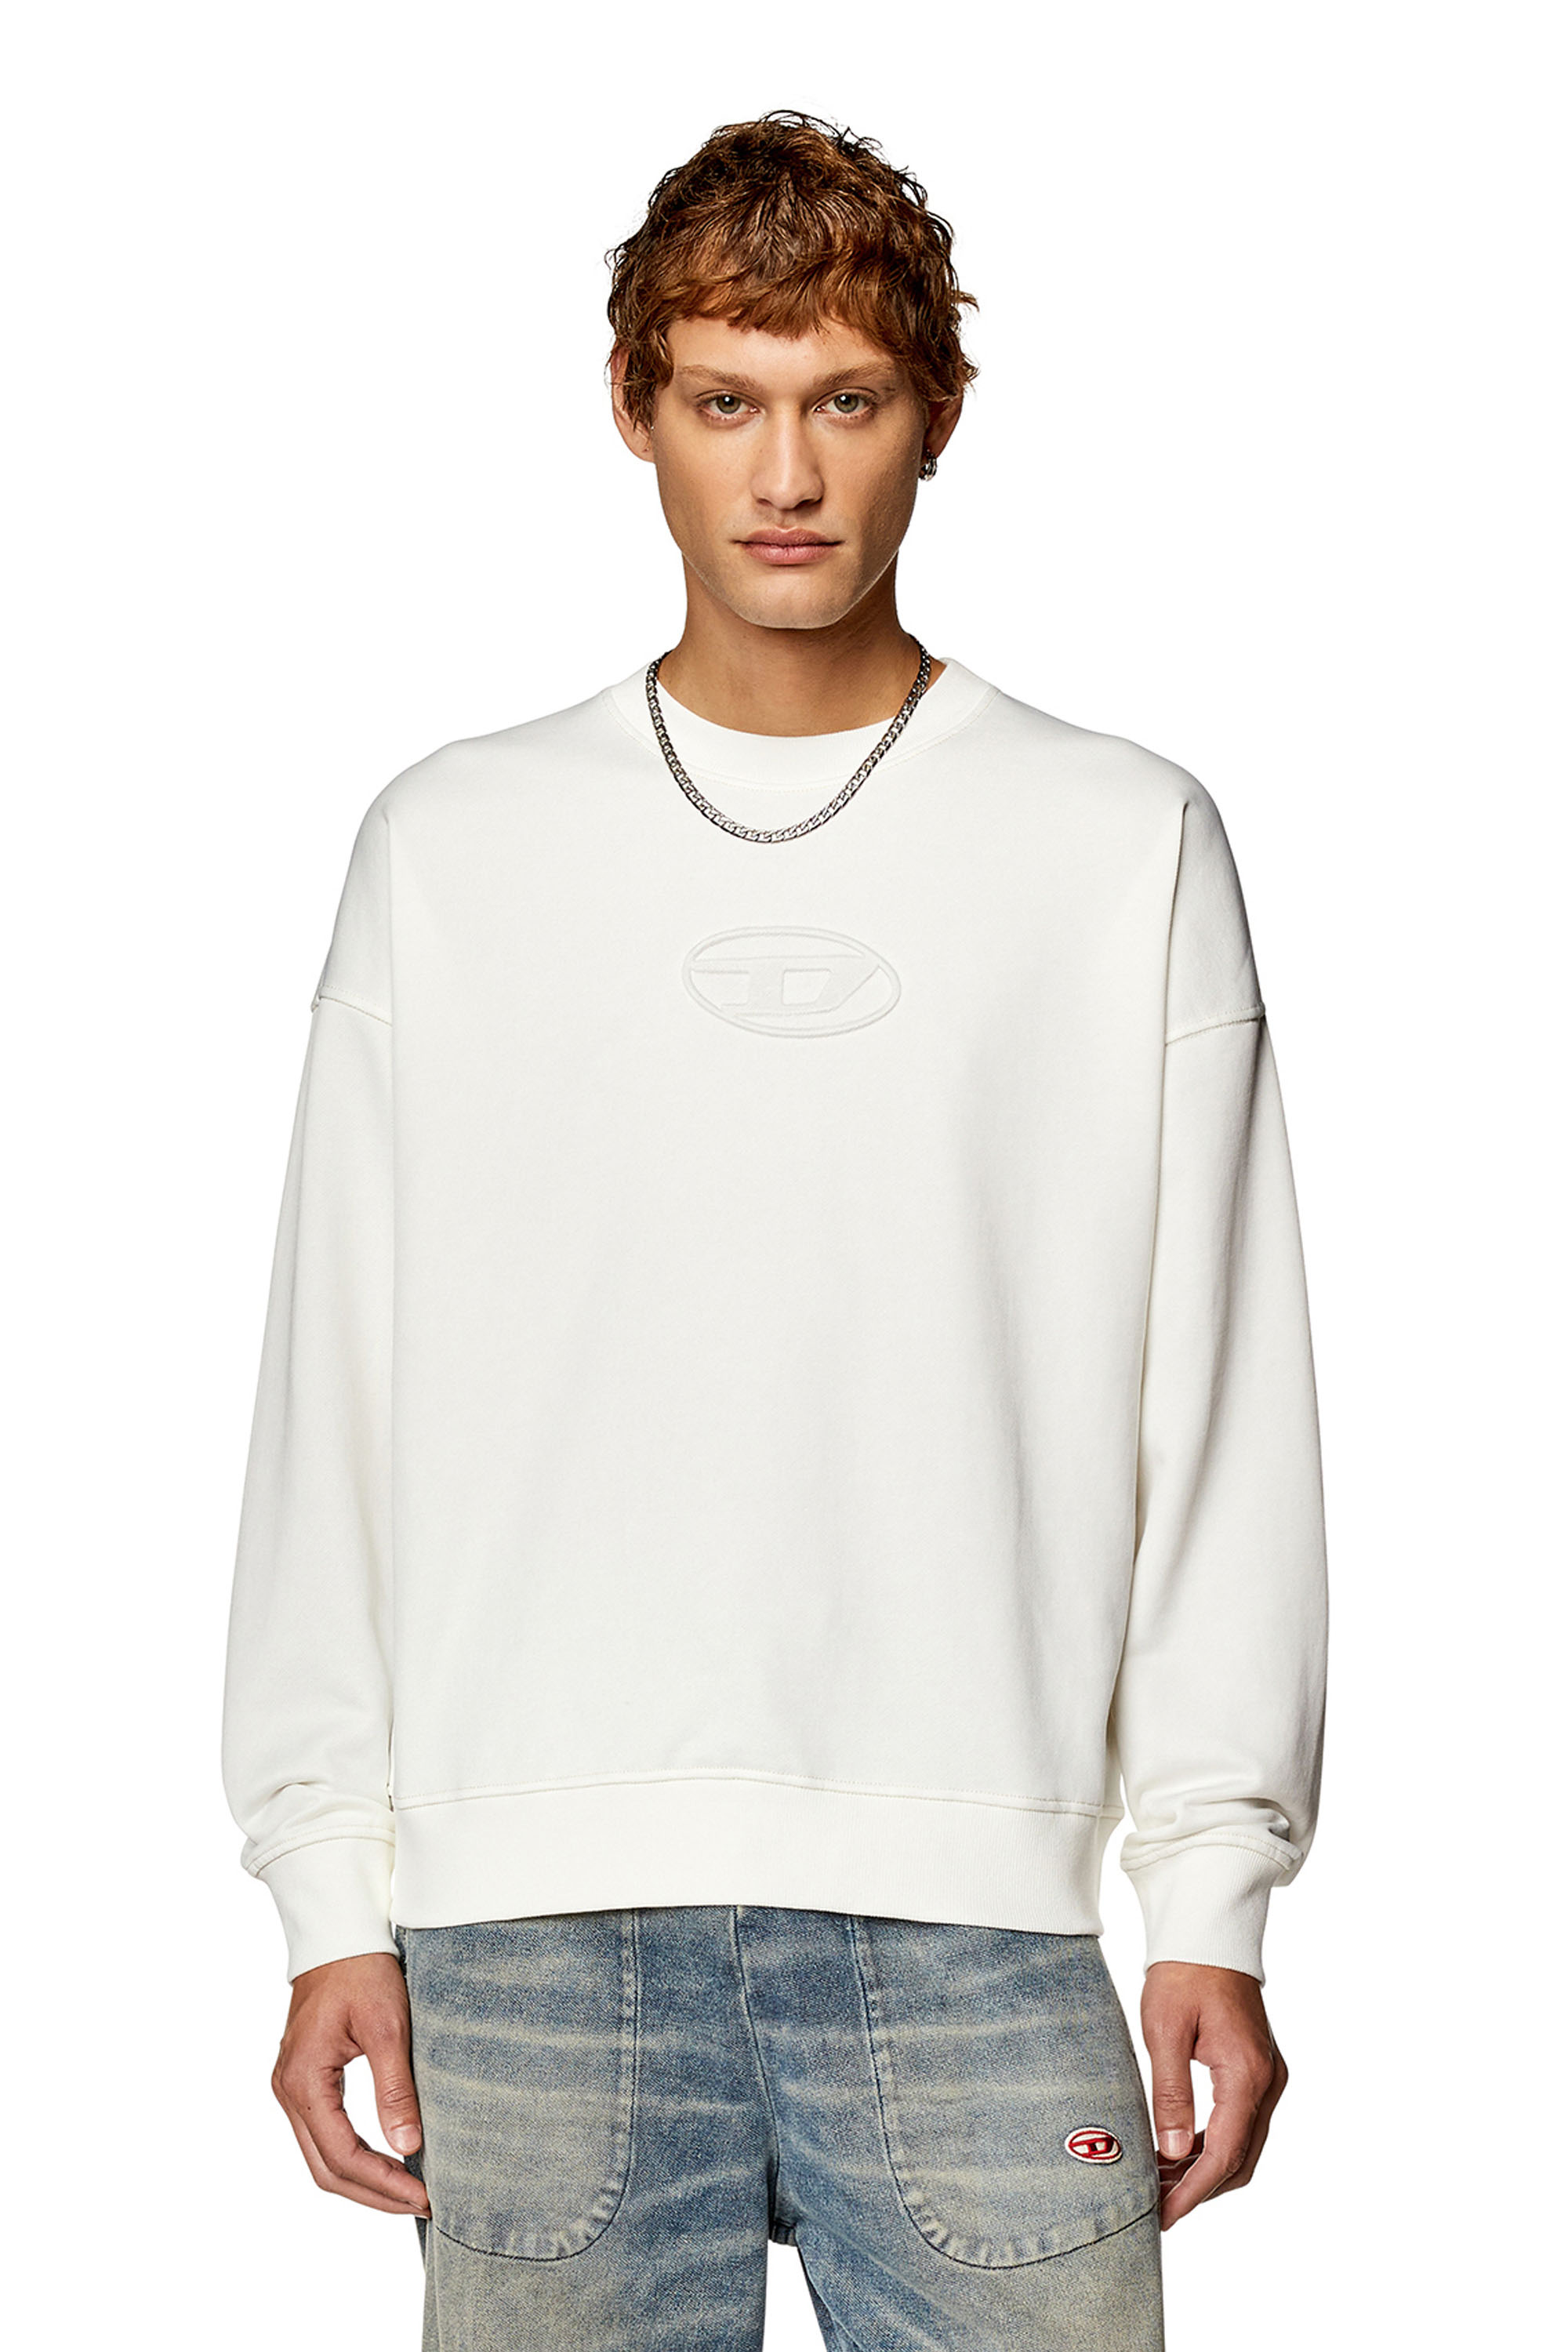 Diesel - Sweat-shirt avec logo Oval D embossé - Pull Cotton - Homme - Blanc